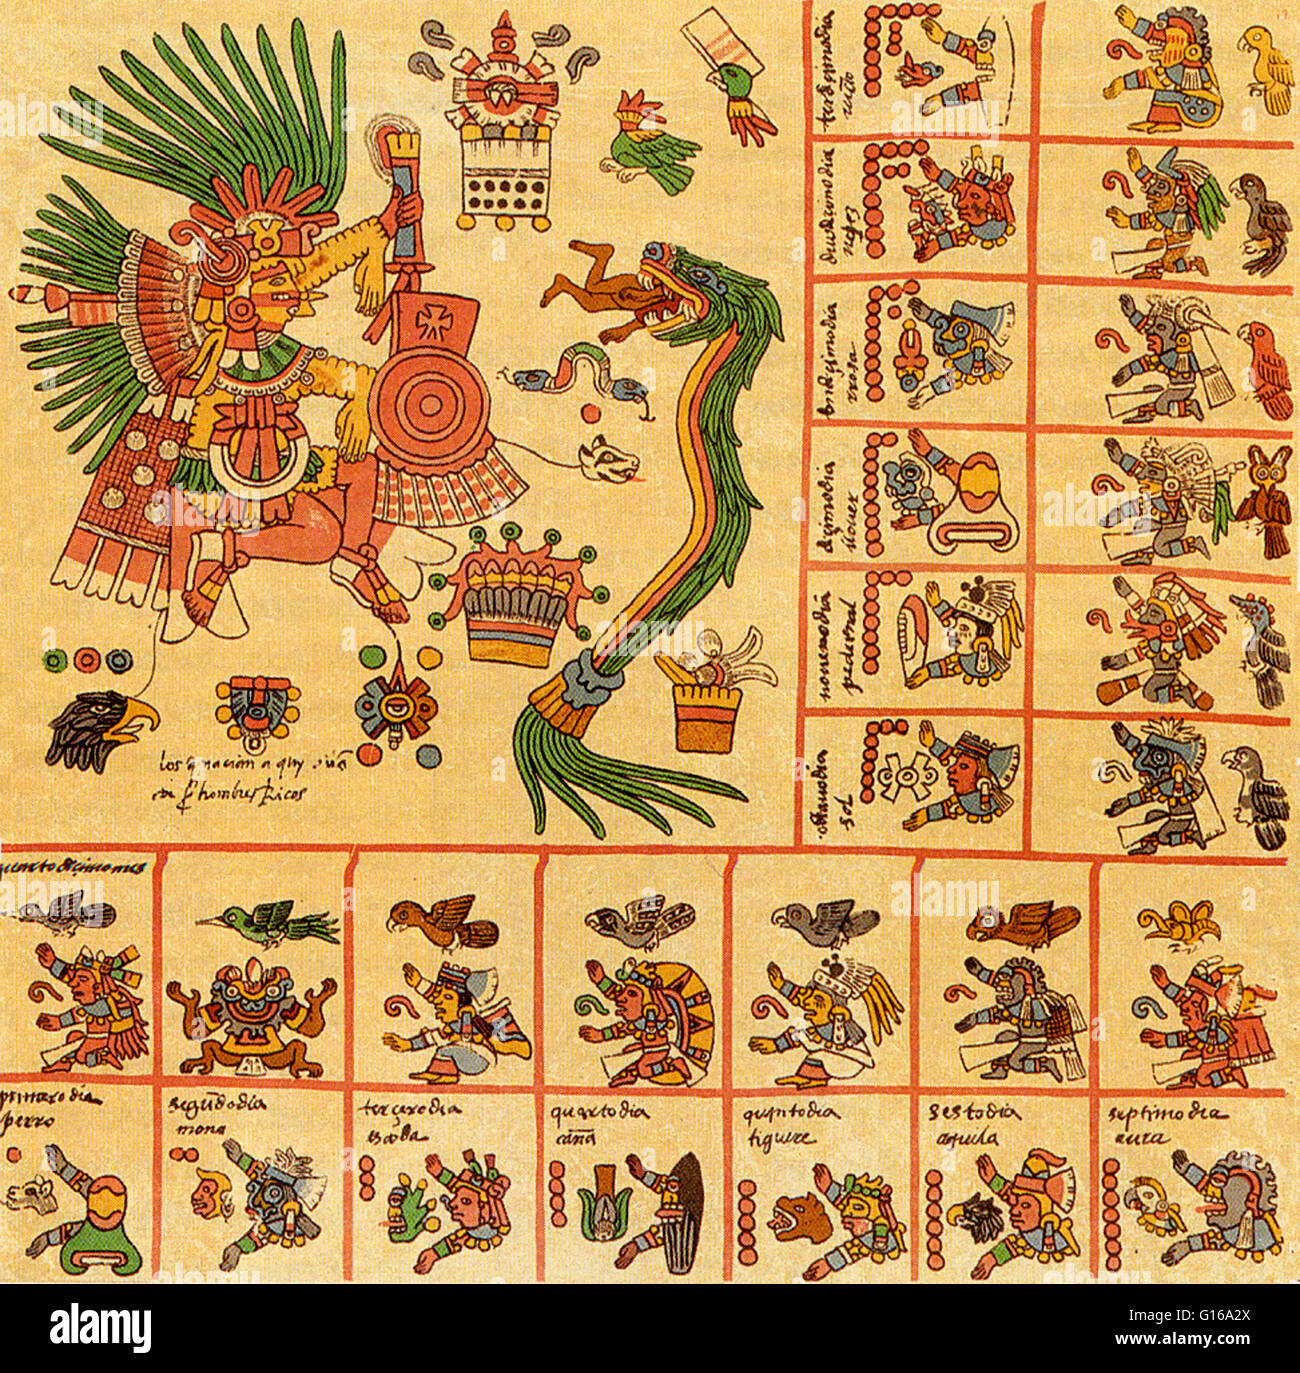 Aztex calendario desde el Codex Borbonicus escritas por sacerdotes Azteca poco antes o poco después de la conquista española de México. El Codex Borbonicus es uno de los supervivientes más intrincados calendarios adivinatorios (o tonalamatl). Cada página representa uno de los 20 trec Foto de stock